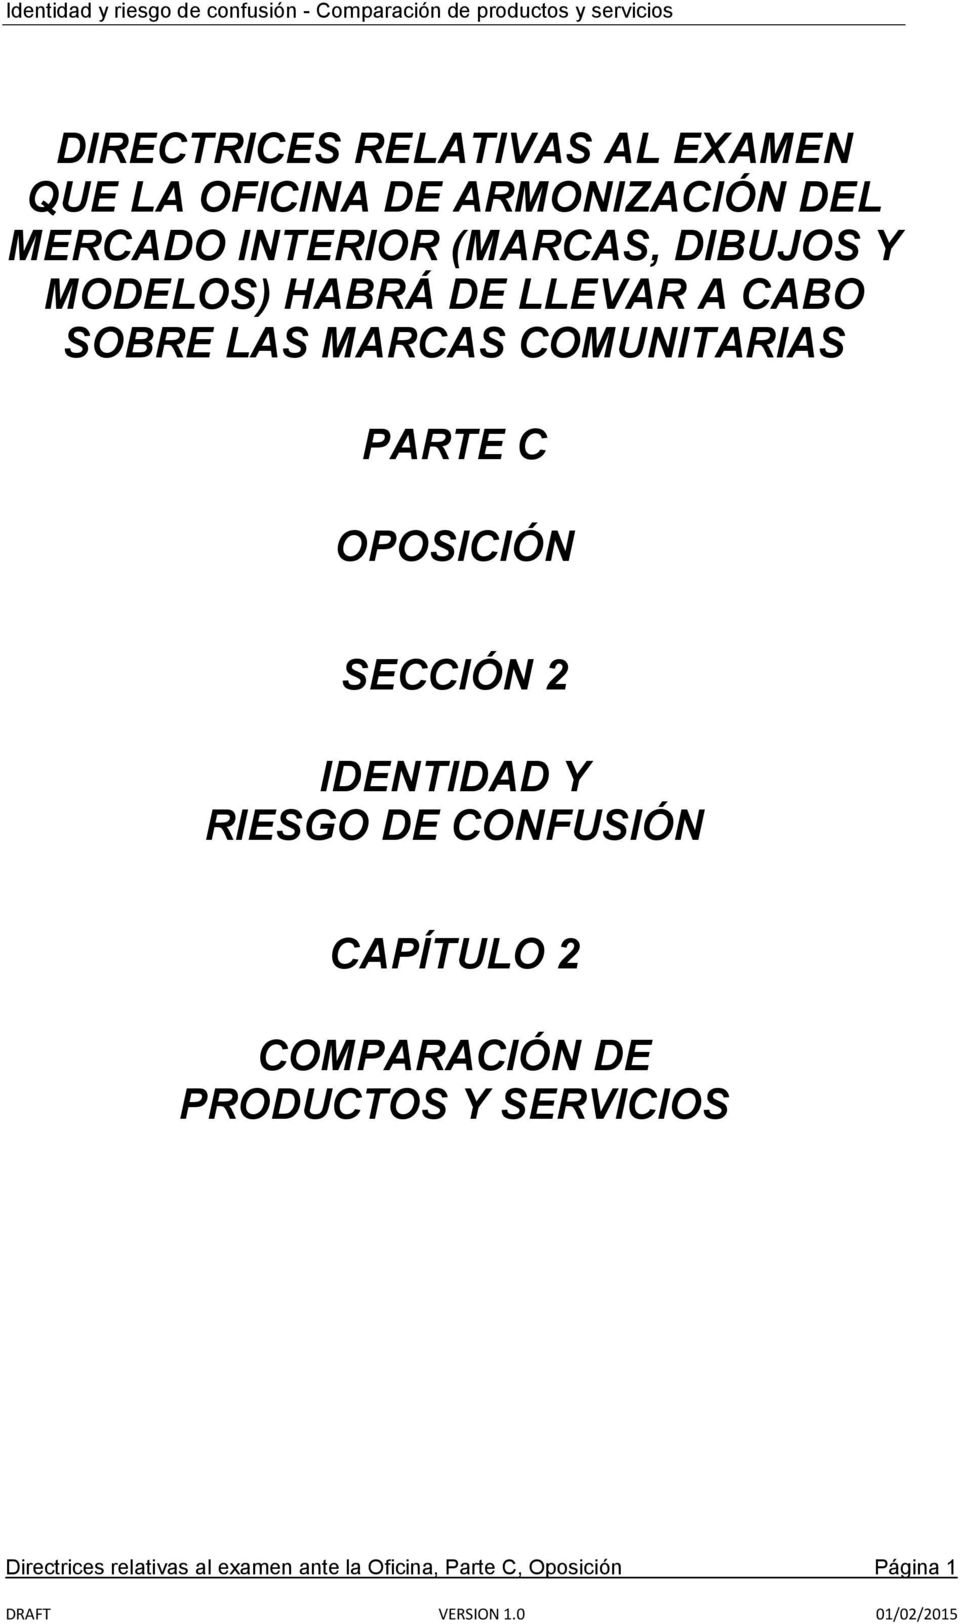 C OPOSICIÓN SECCIÓN 2 IDENTIDAD Y RIESGO DE CONFUSIÓN CAPÍTULO 2 COMPARACIÓN DE